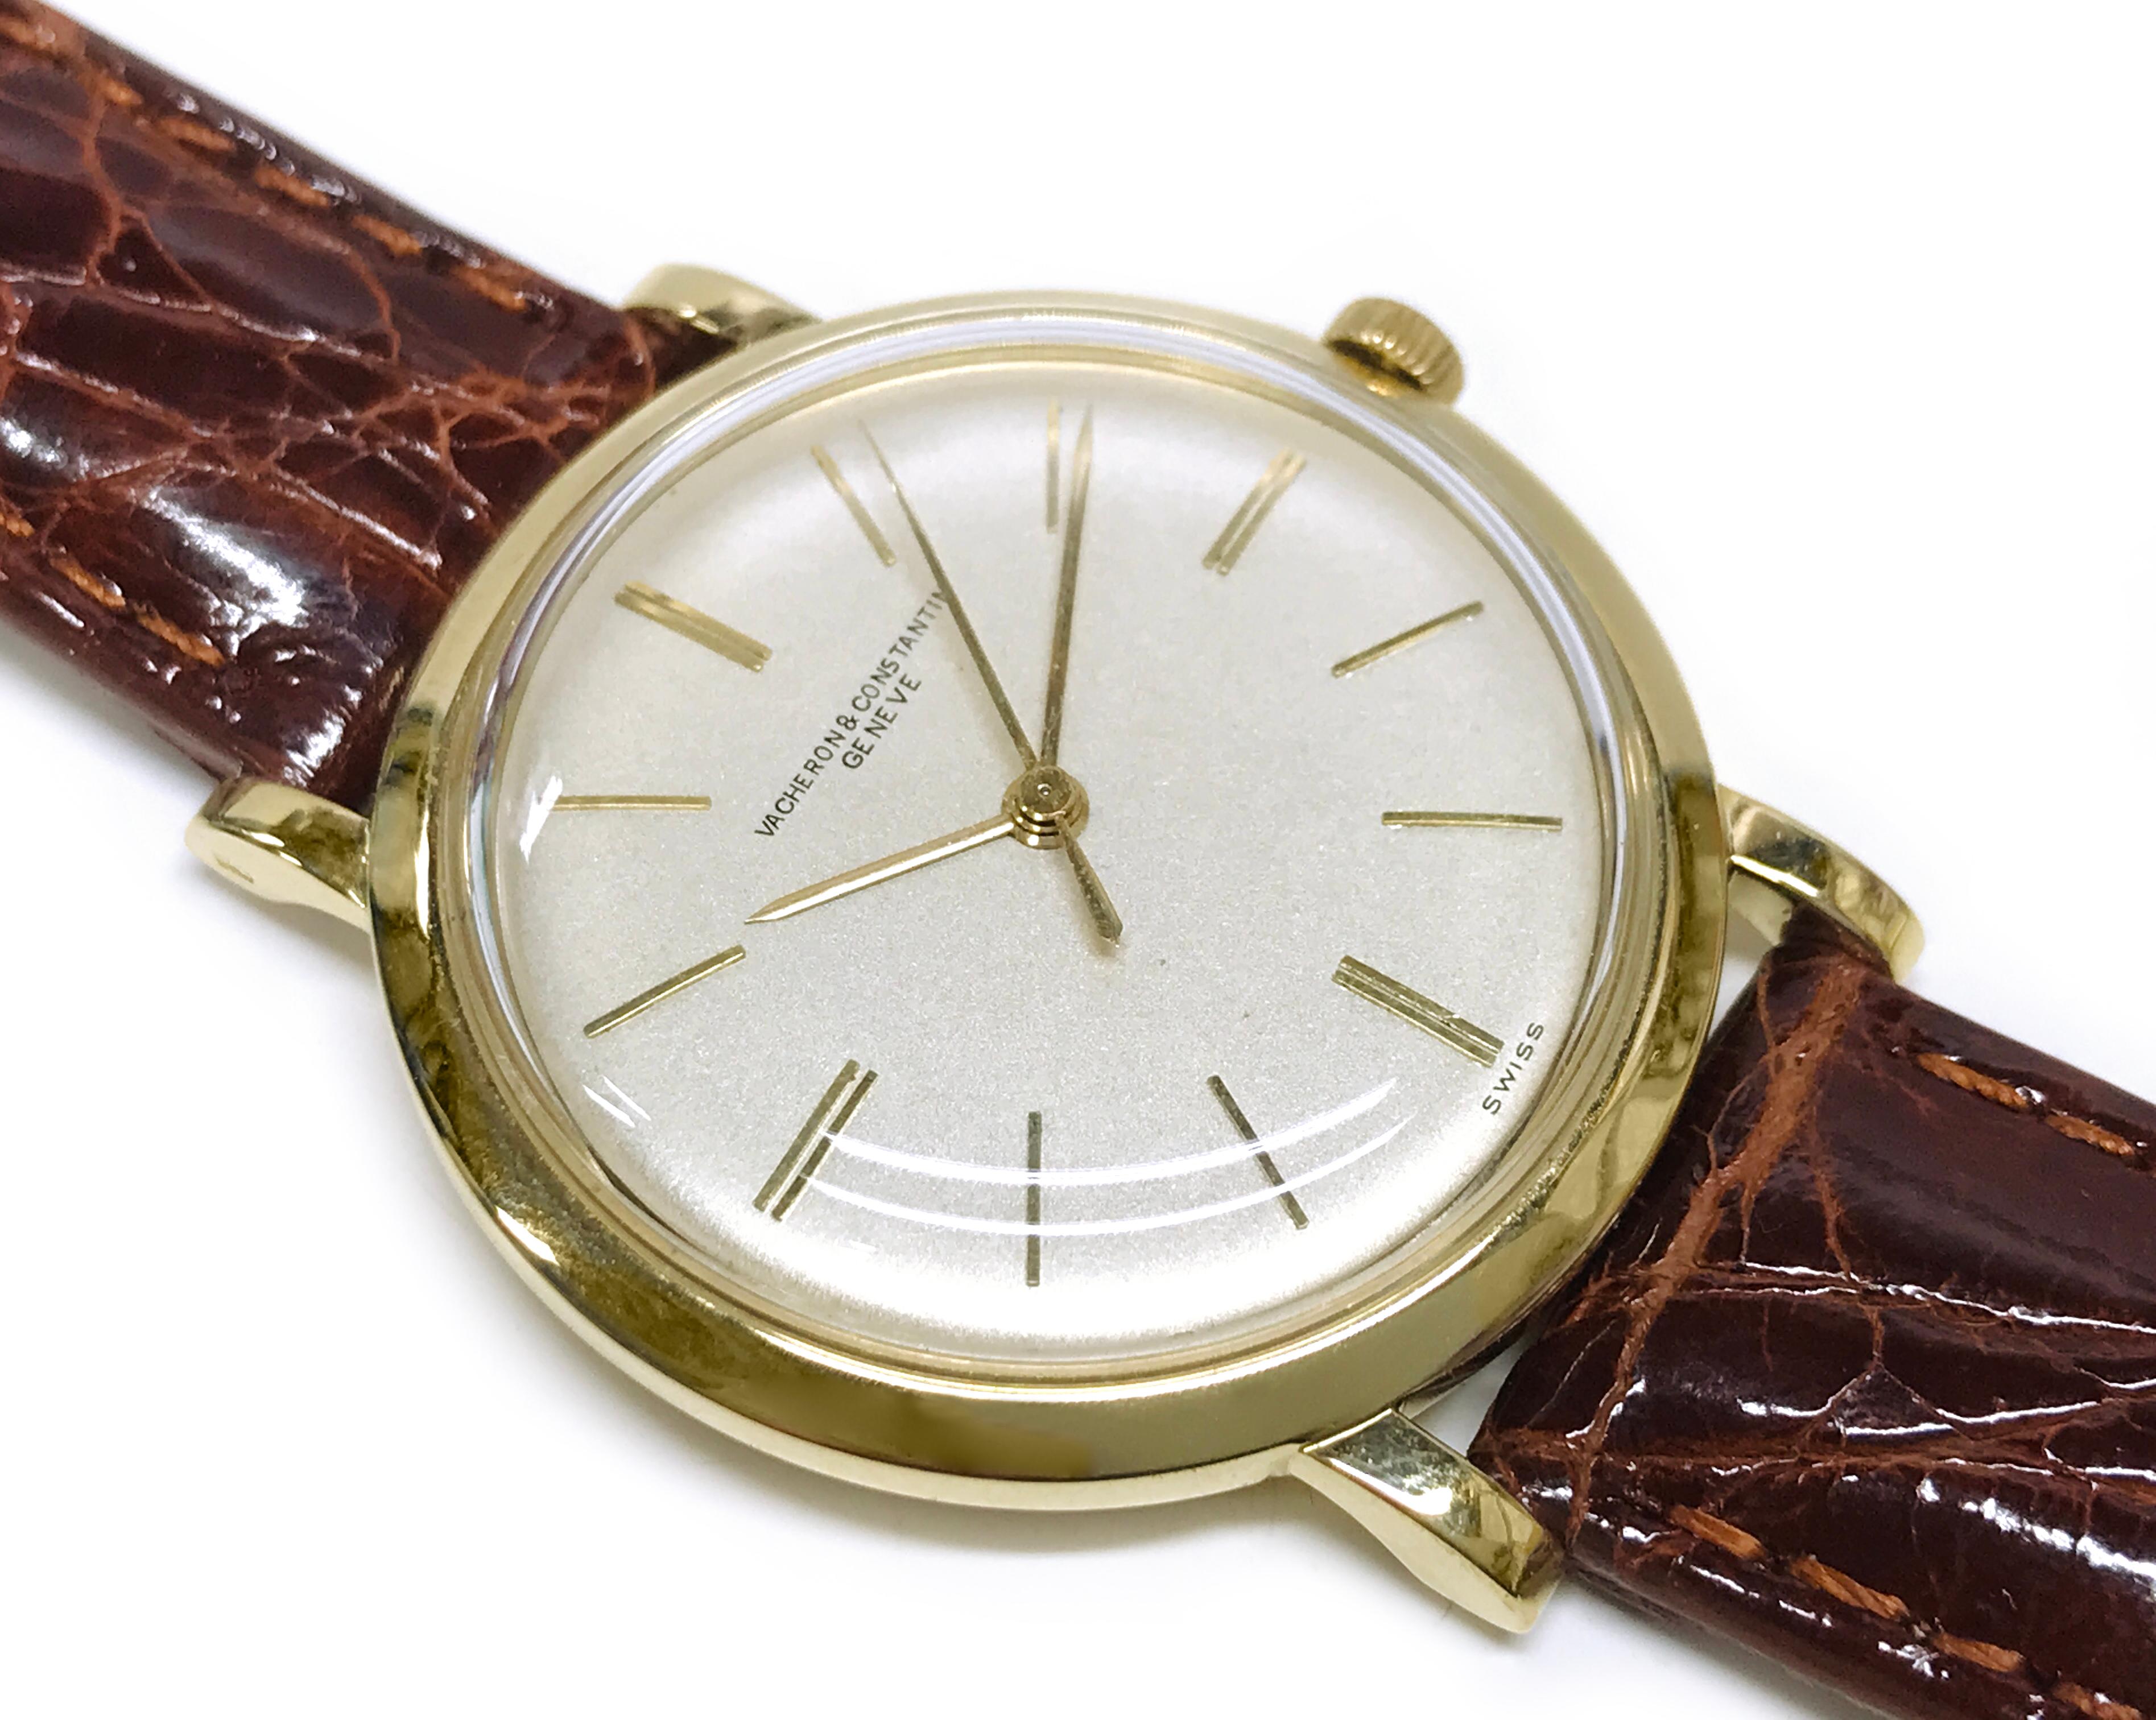 Vacheron & Constantin, montre manuelle pour homme 18 carats, 1957. La montre est équipée d'un mouvement 5 Jewell #VC 1002. Le numéro de dossier est 355838, numéro de série 530703. La montre possède un cadran argenté, des aiguilles des heures et des